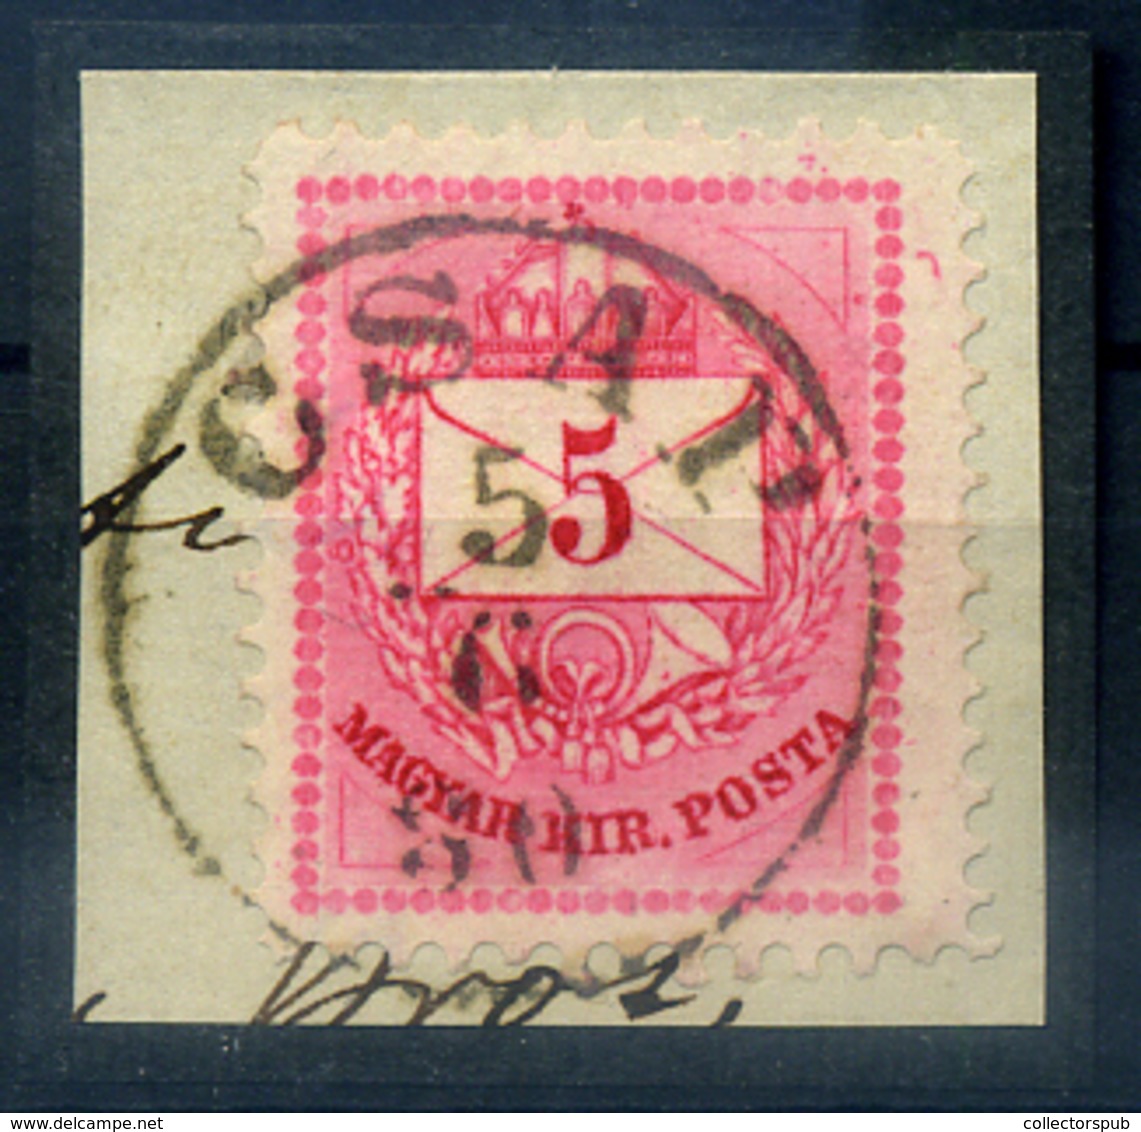 CSAP 5Kr Szép  Bélyegzés - Used Stamps